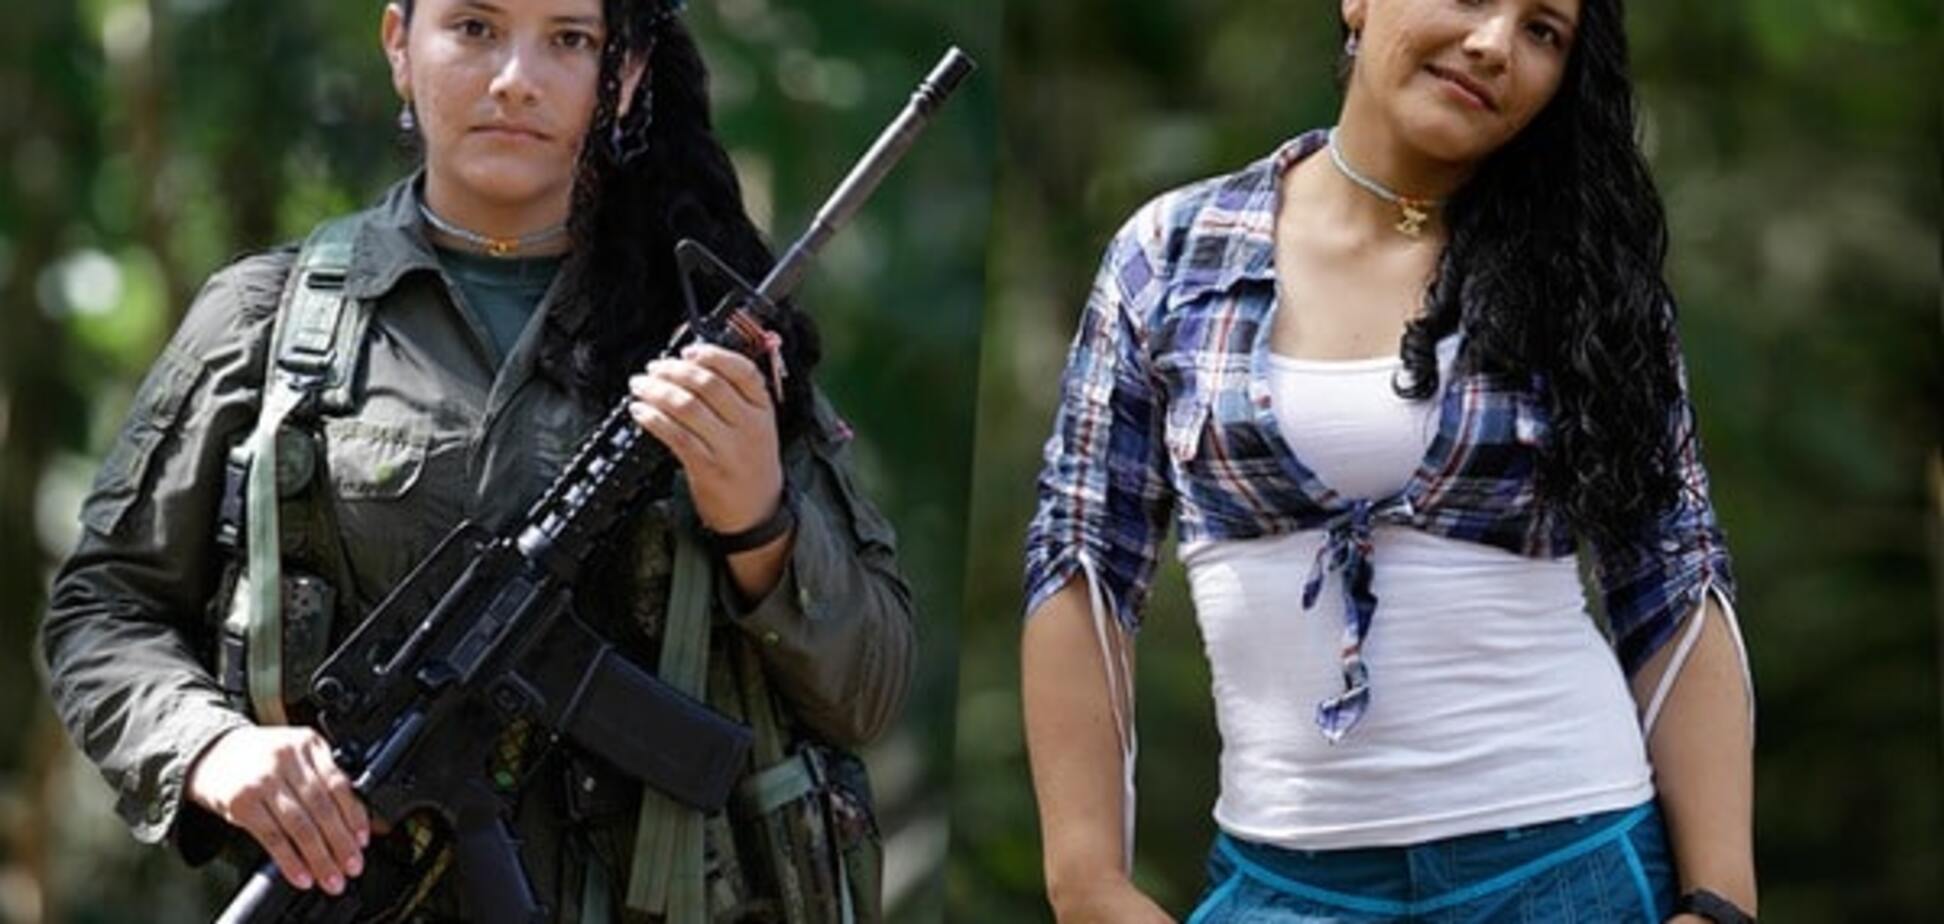 Как выглядят девушки в рядах повстанческой группировки: фоторепортаж из Колумбии